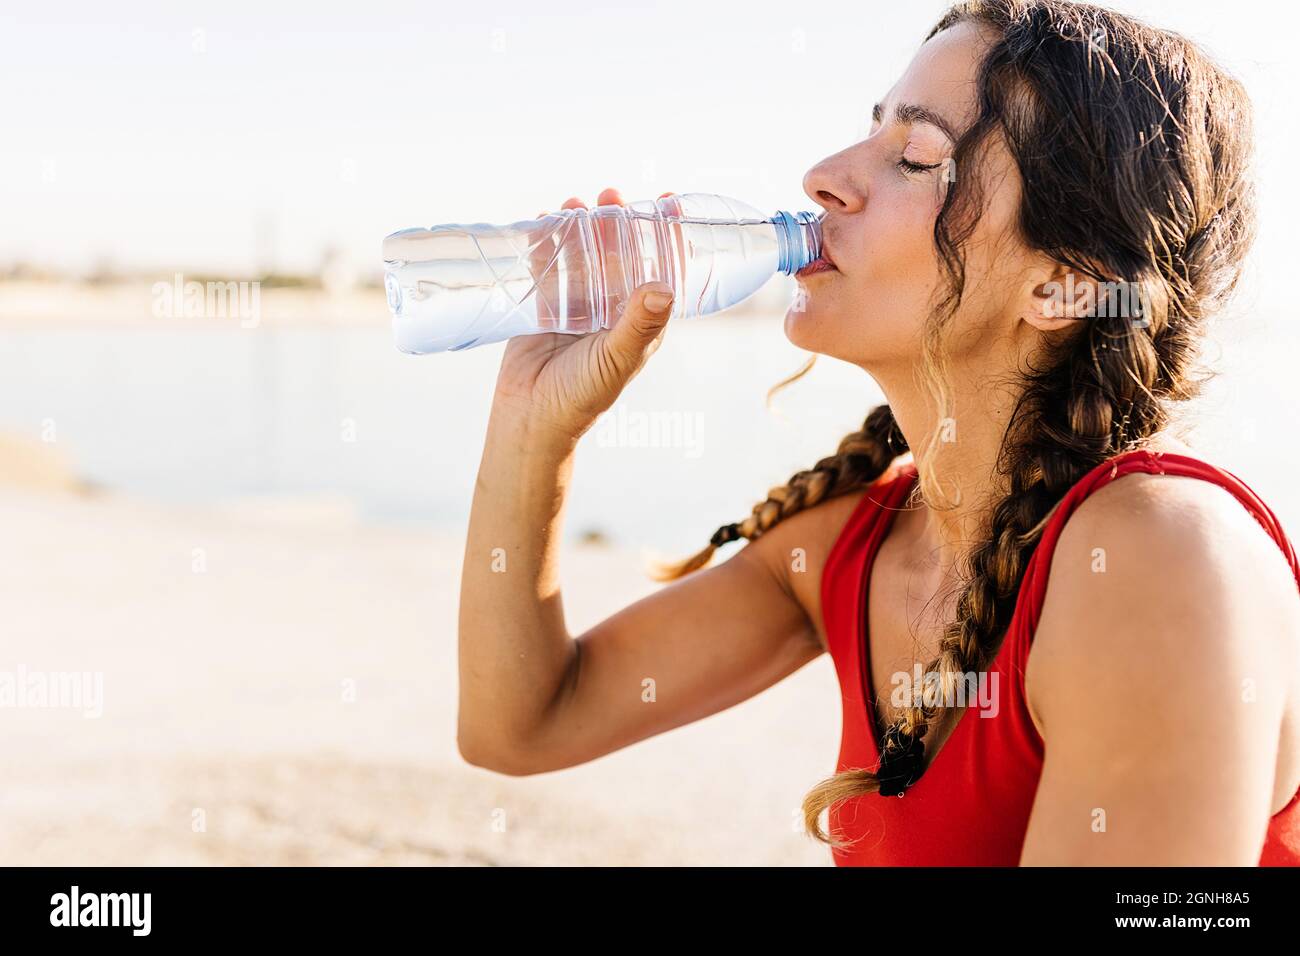 Une femme de fitness boit de l'eau à la bouteille après une séance d'entraînement le matin Banque D'Images